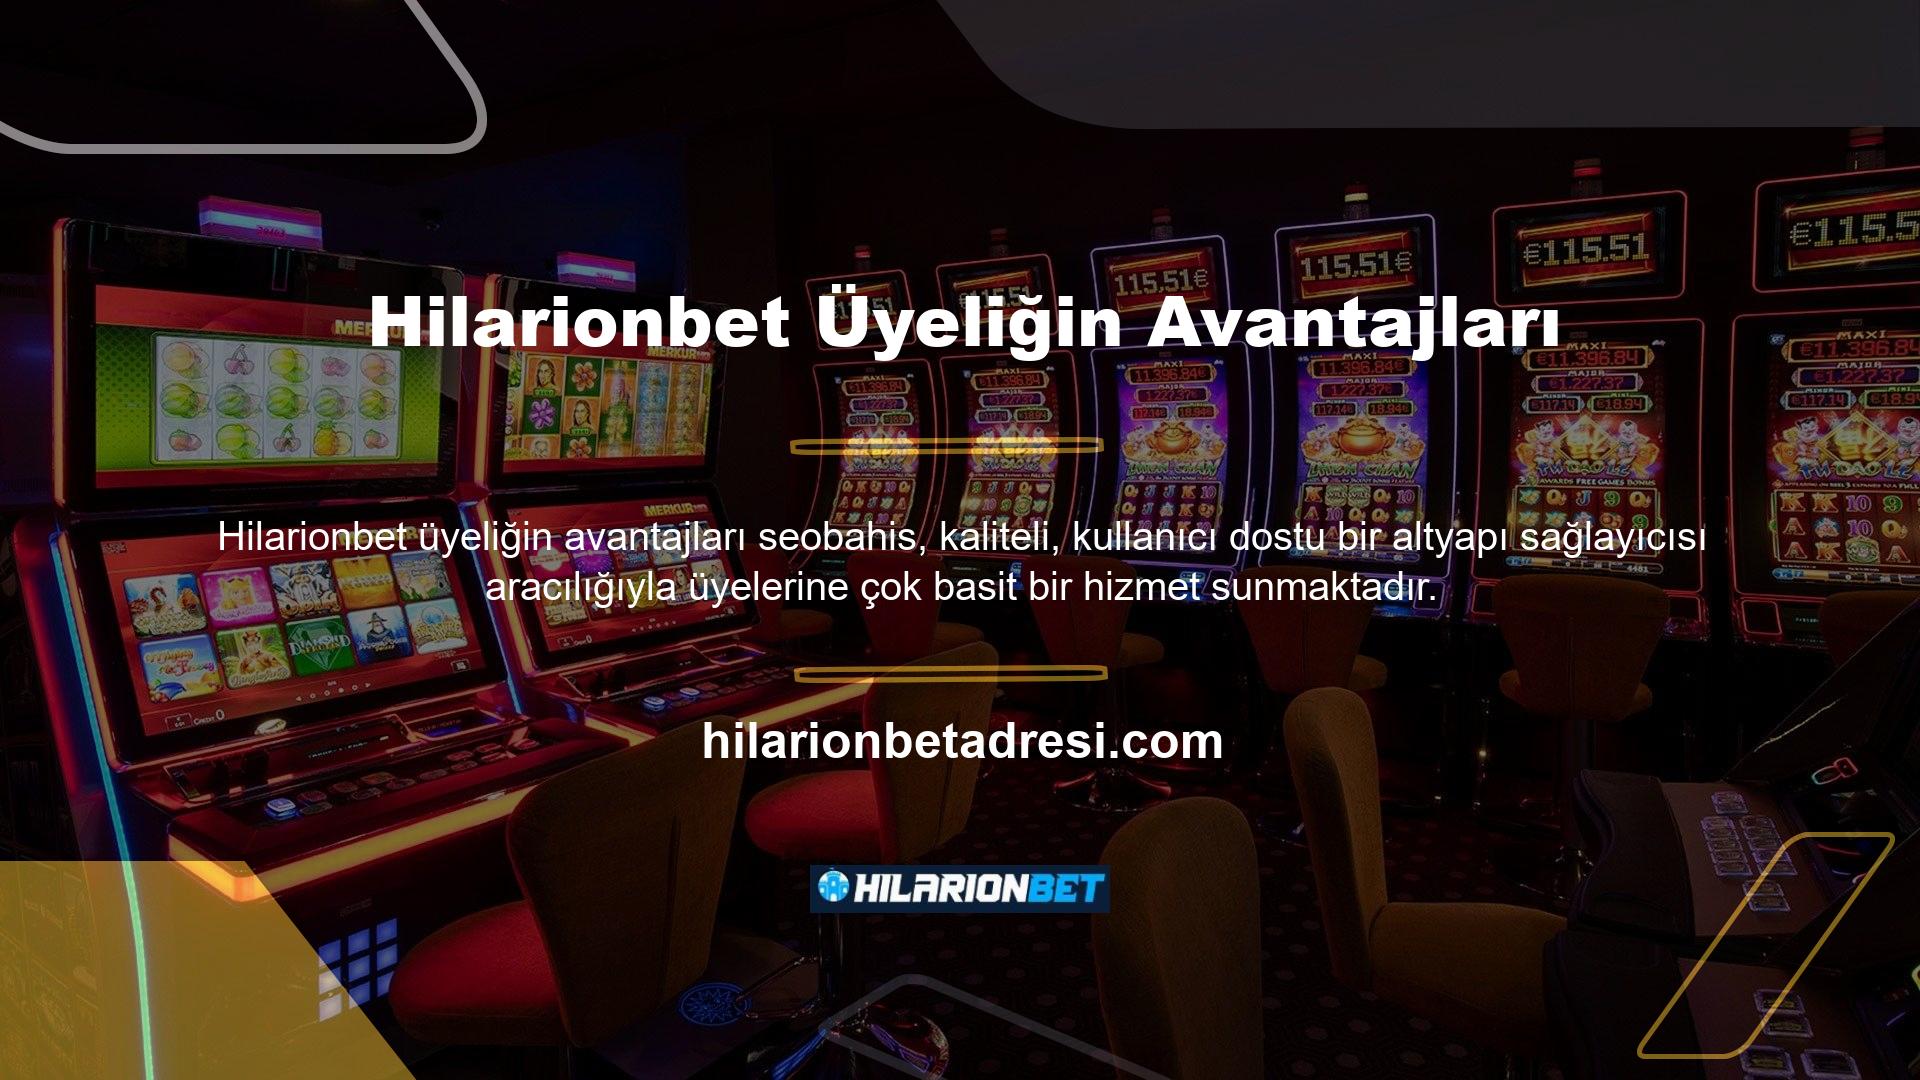 Hilarionbet casino işi, spor ve canlı casinonun aktif içeriğinin yaygın olduğu eğlence ilkesine odaklanmaktadır